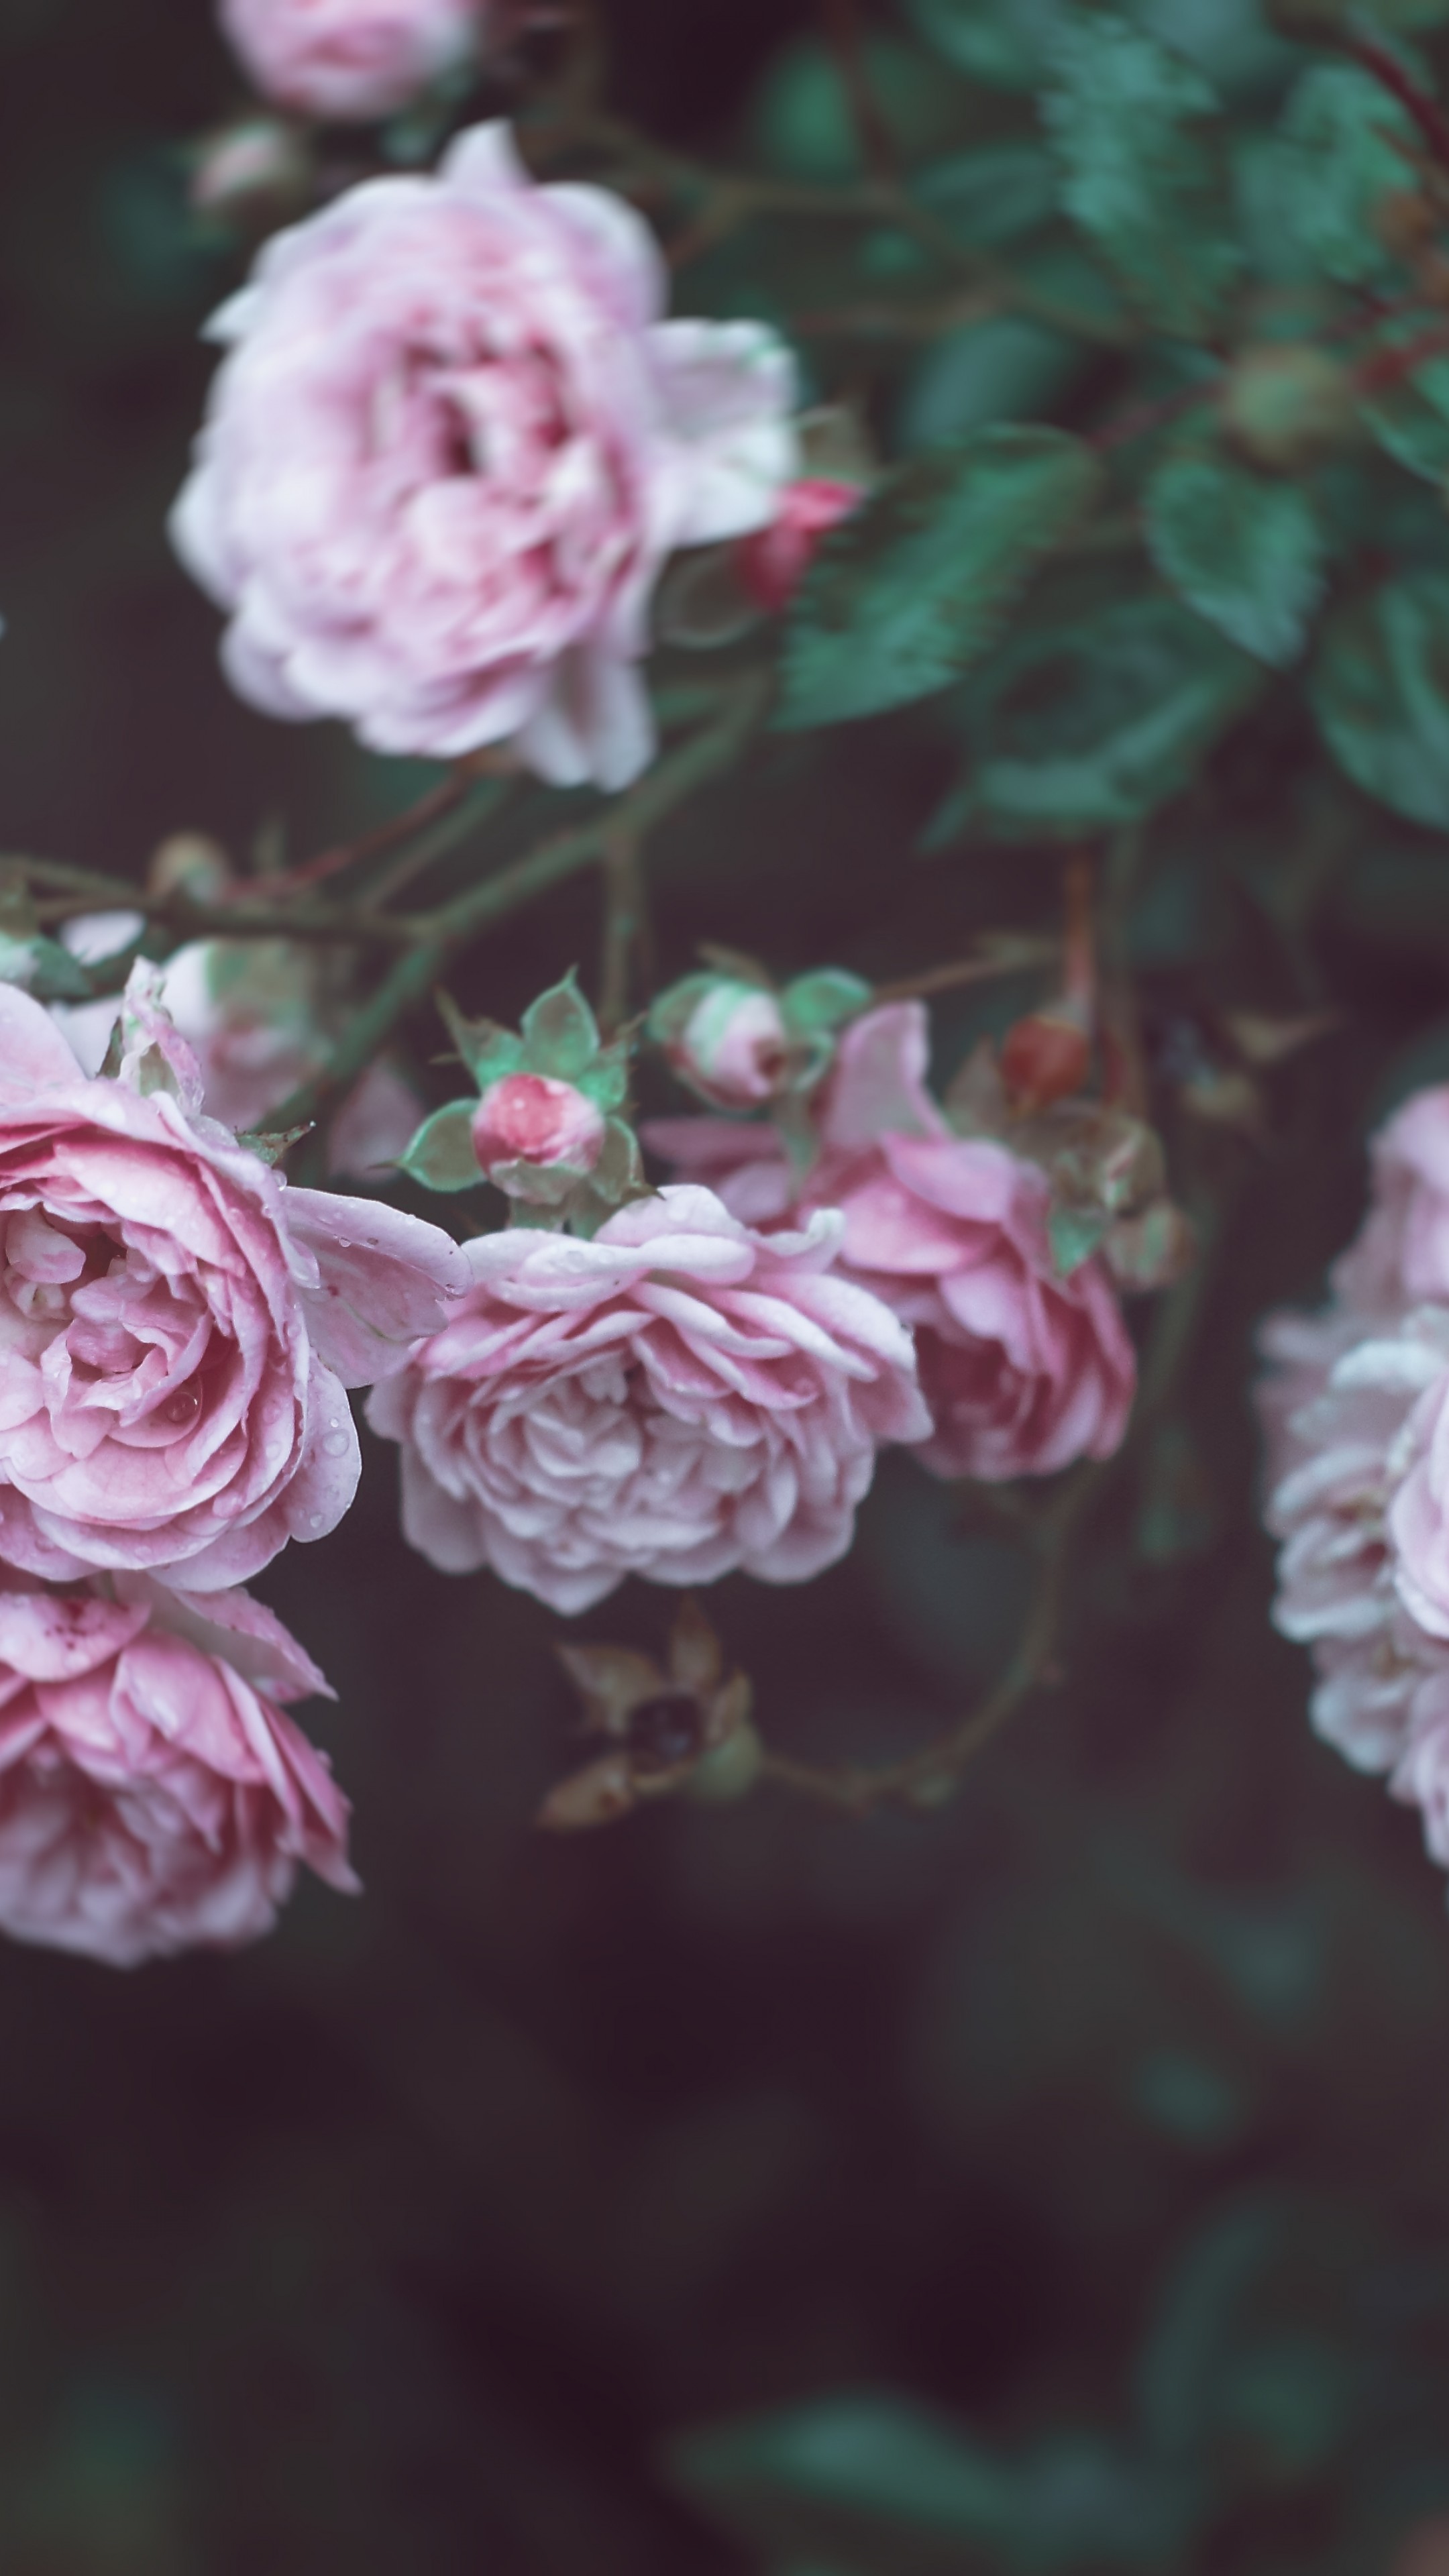 8k flowers wallpapers,flower,pink,rosa × centifolia,garden roses,rose